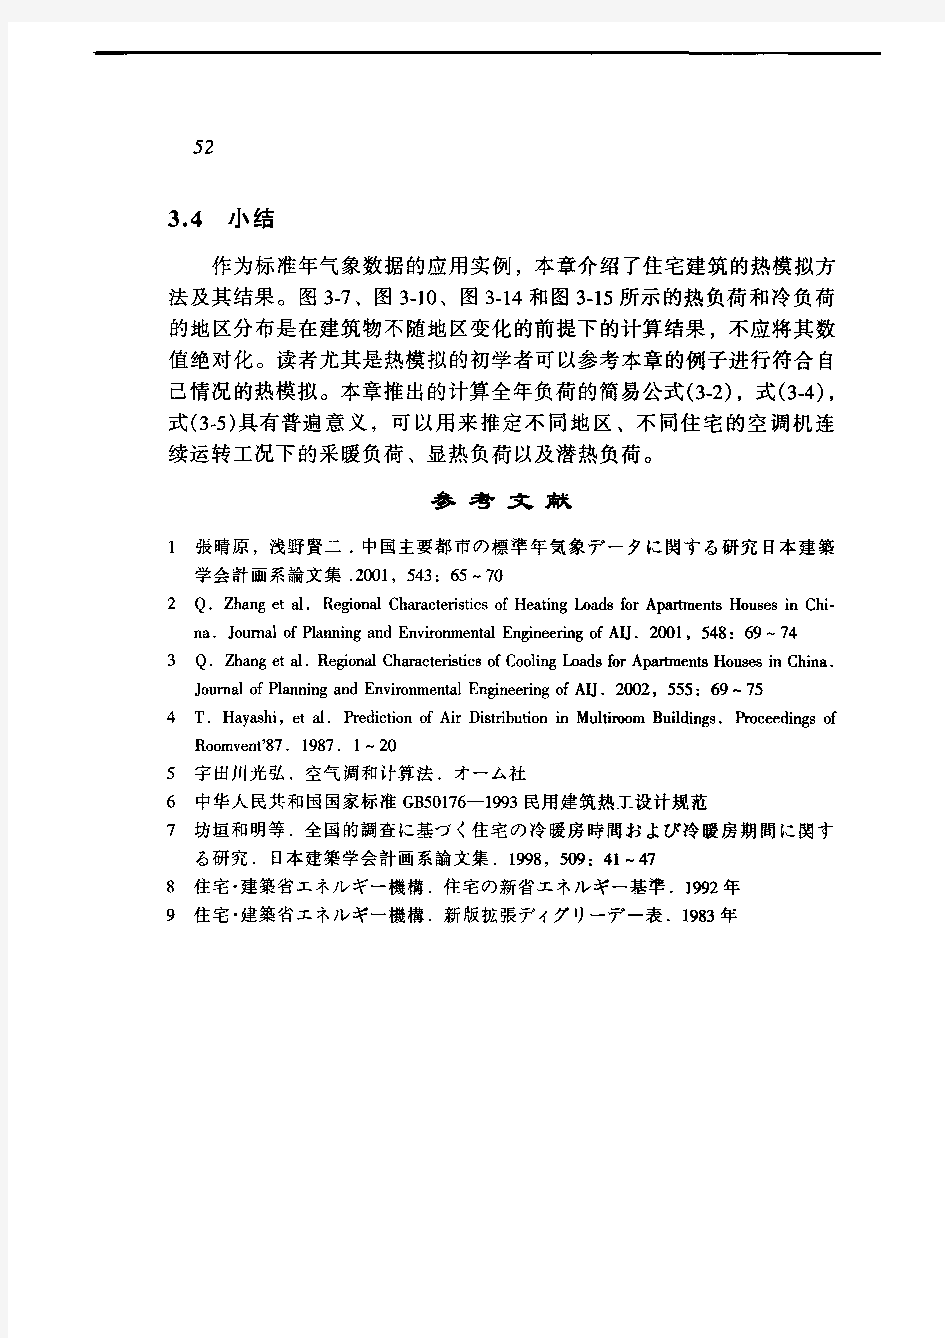 国建筑用标准气象数据库2.pdf.pdf (548.54 KB) 中国建筑用标准气象数据库